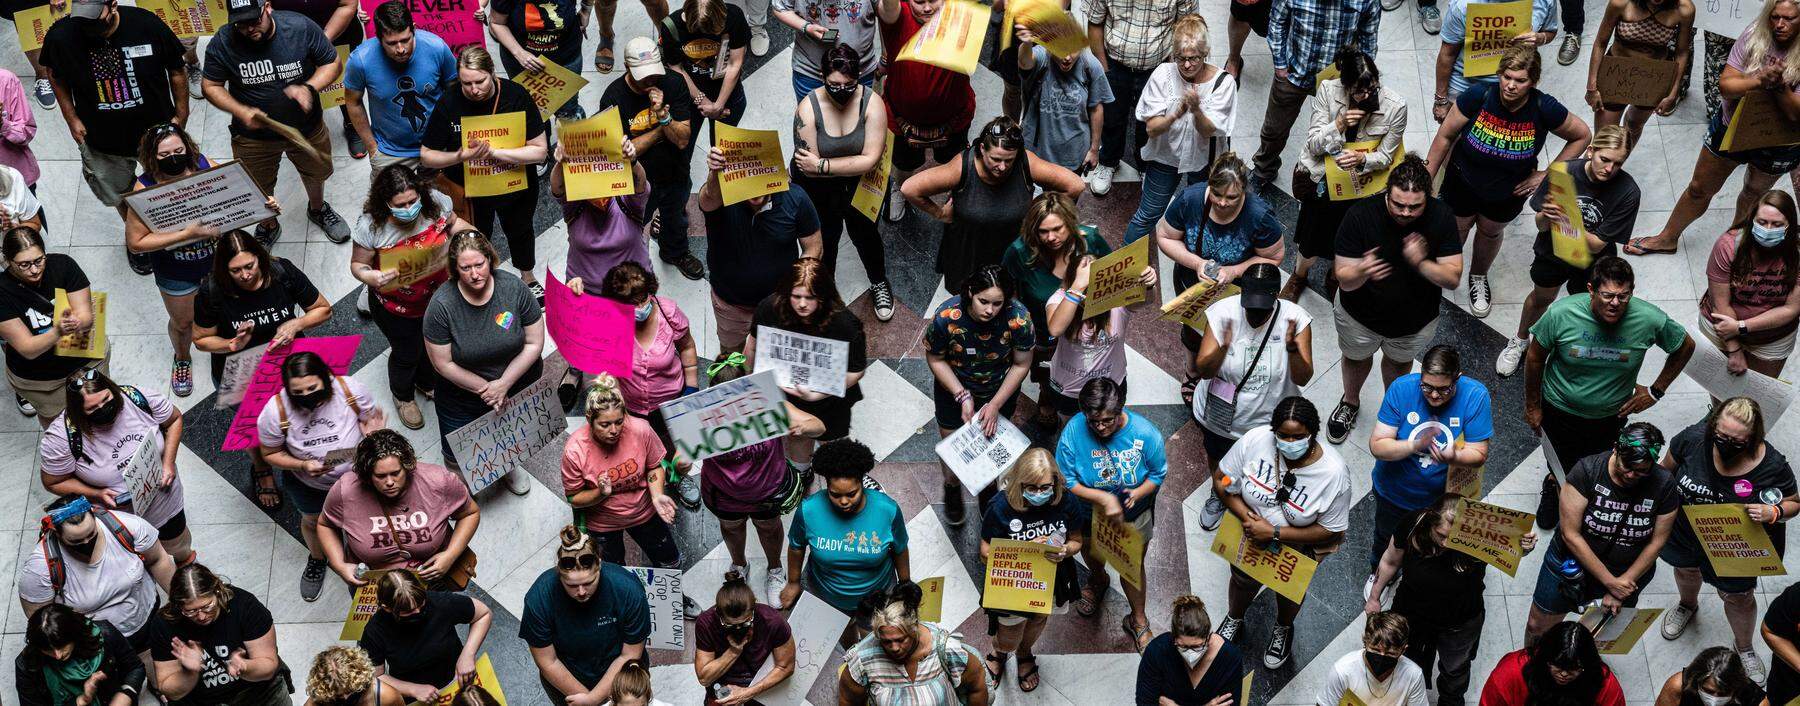 Eine Kundgebung im Kapitol in Indiana, wo über ein Abtreibungsverbot beraten wird. Die neuen Regelungen sorgen in den USA für heftige Diskussionen. 